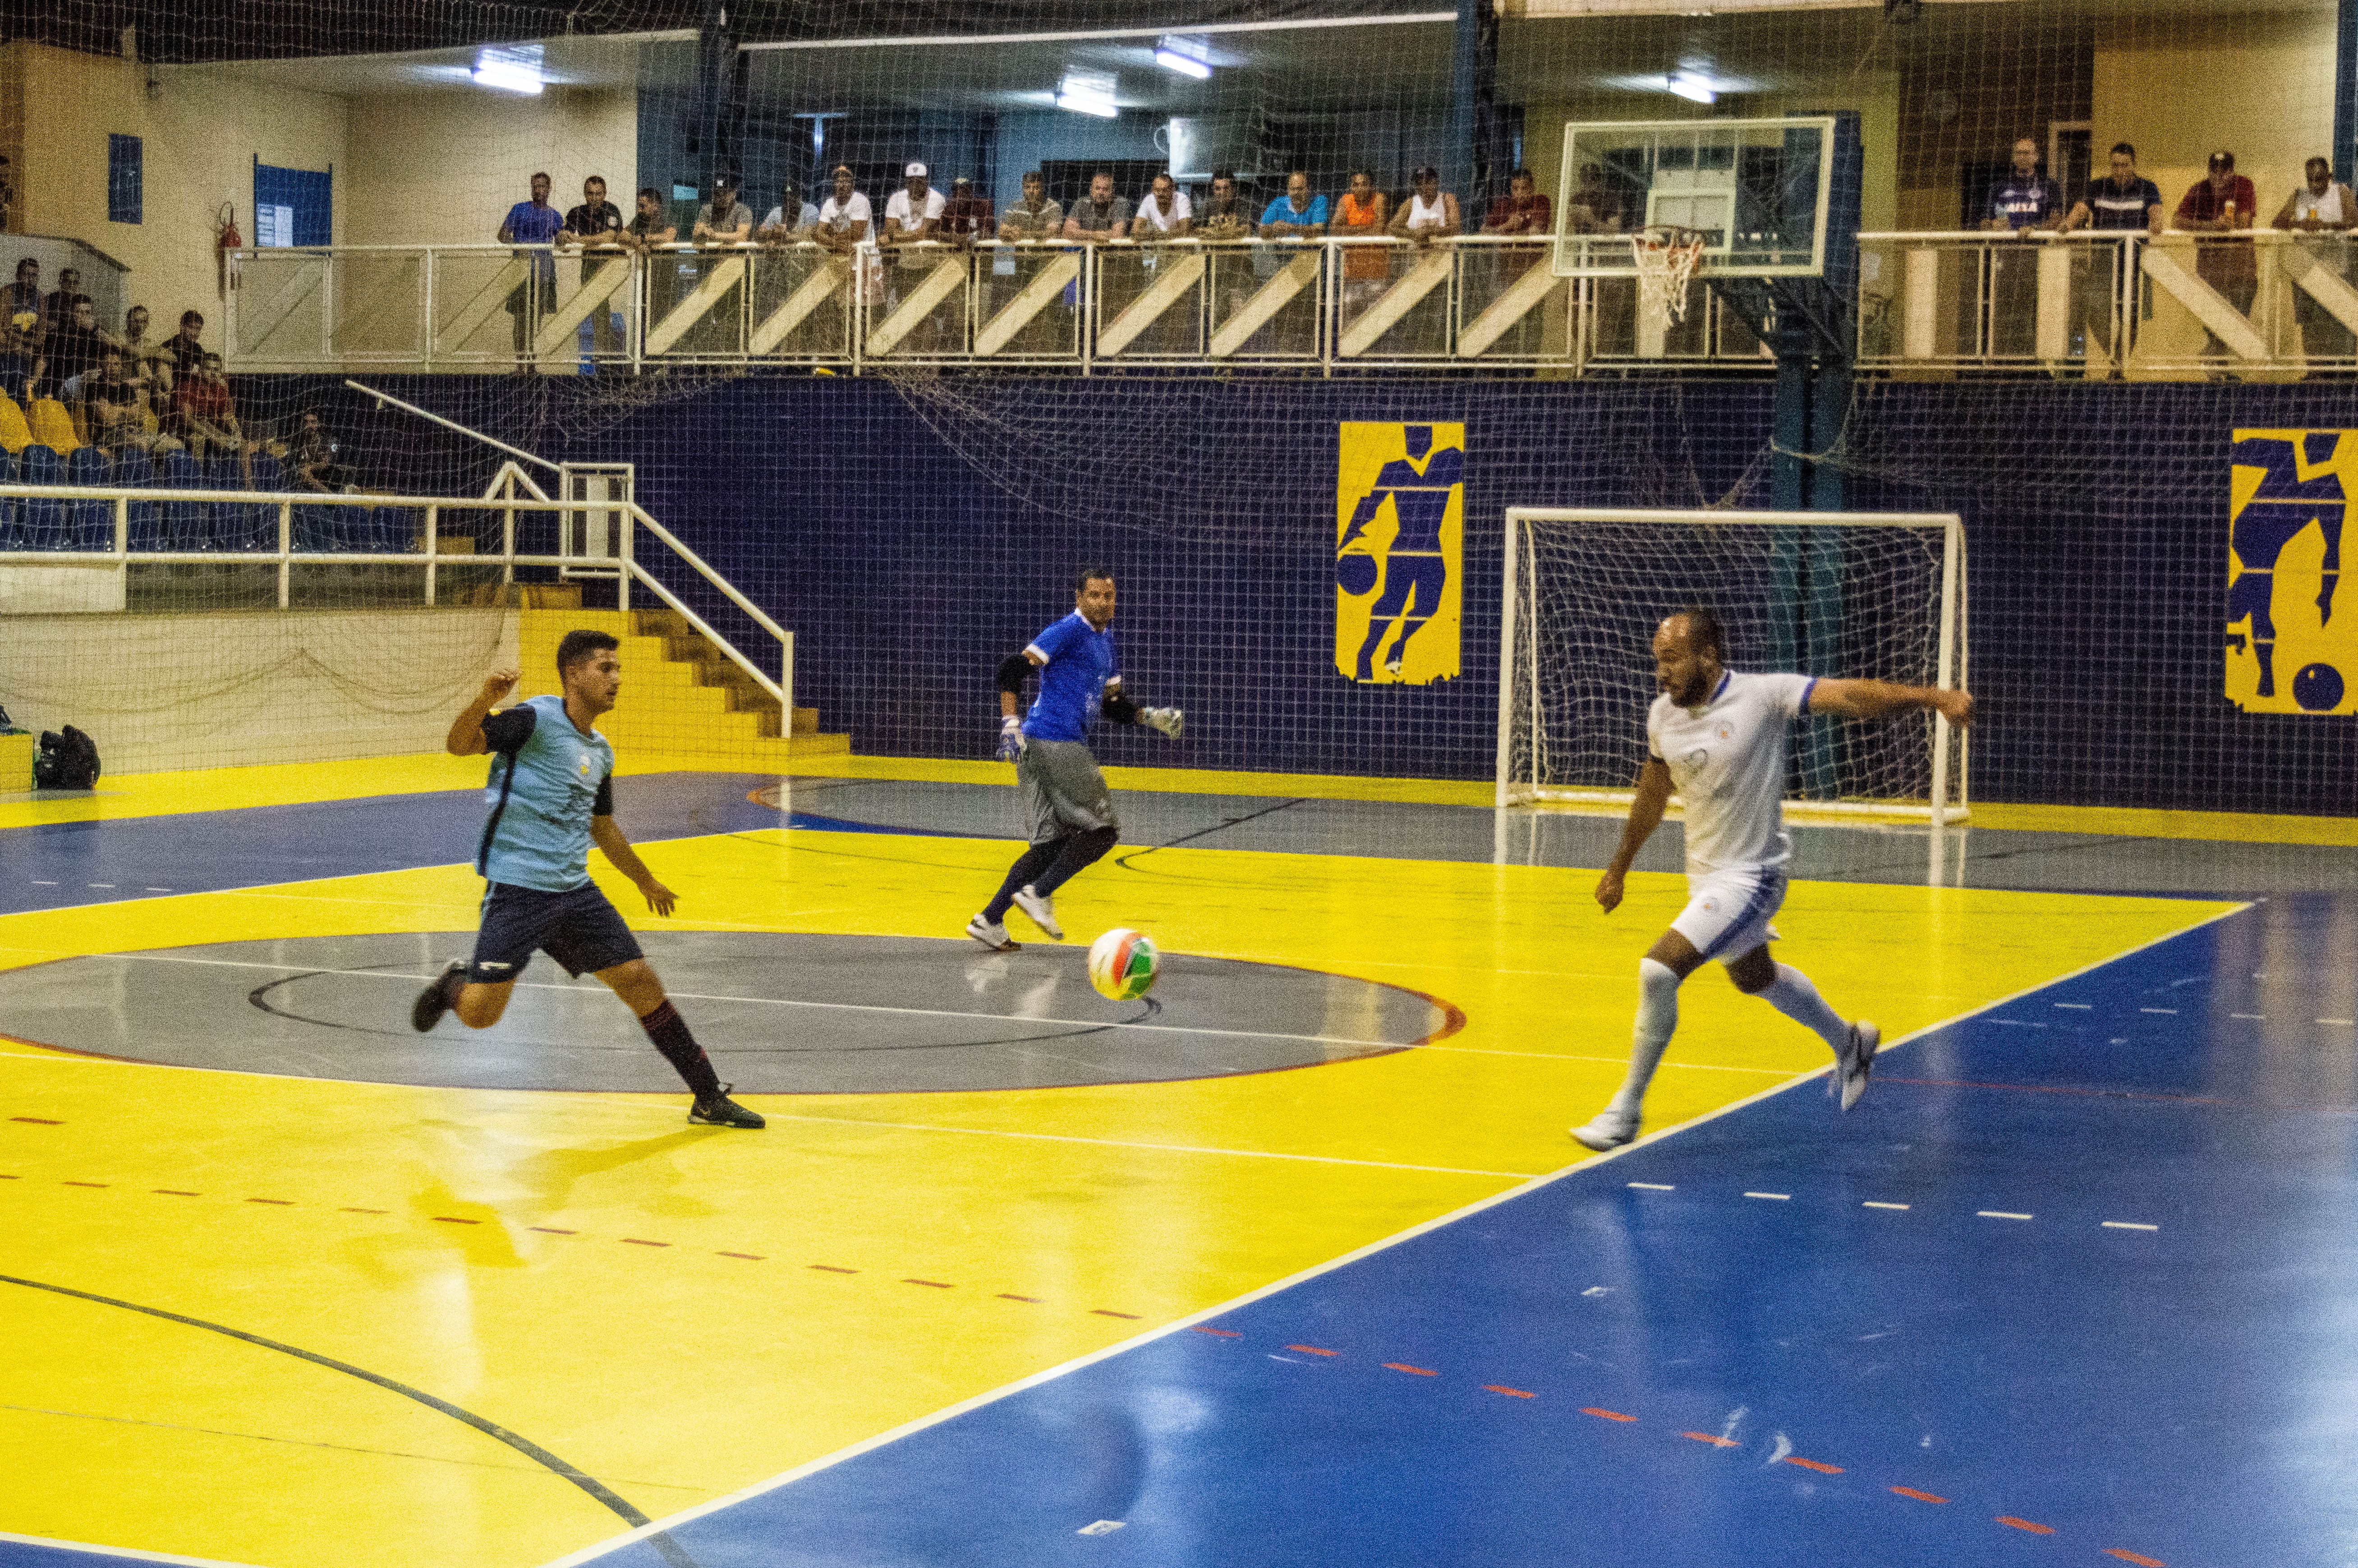 Copa Demá de Futsal 2020, no Ginásio de Esportes Dr. Ulysses Guimarães, Urupês. Foto: Carina Costa